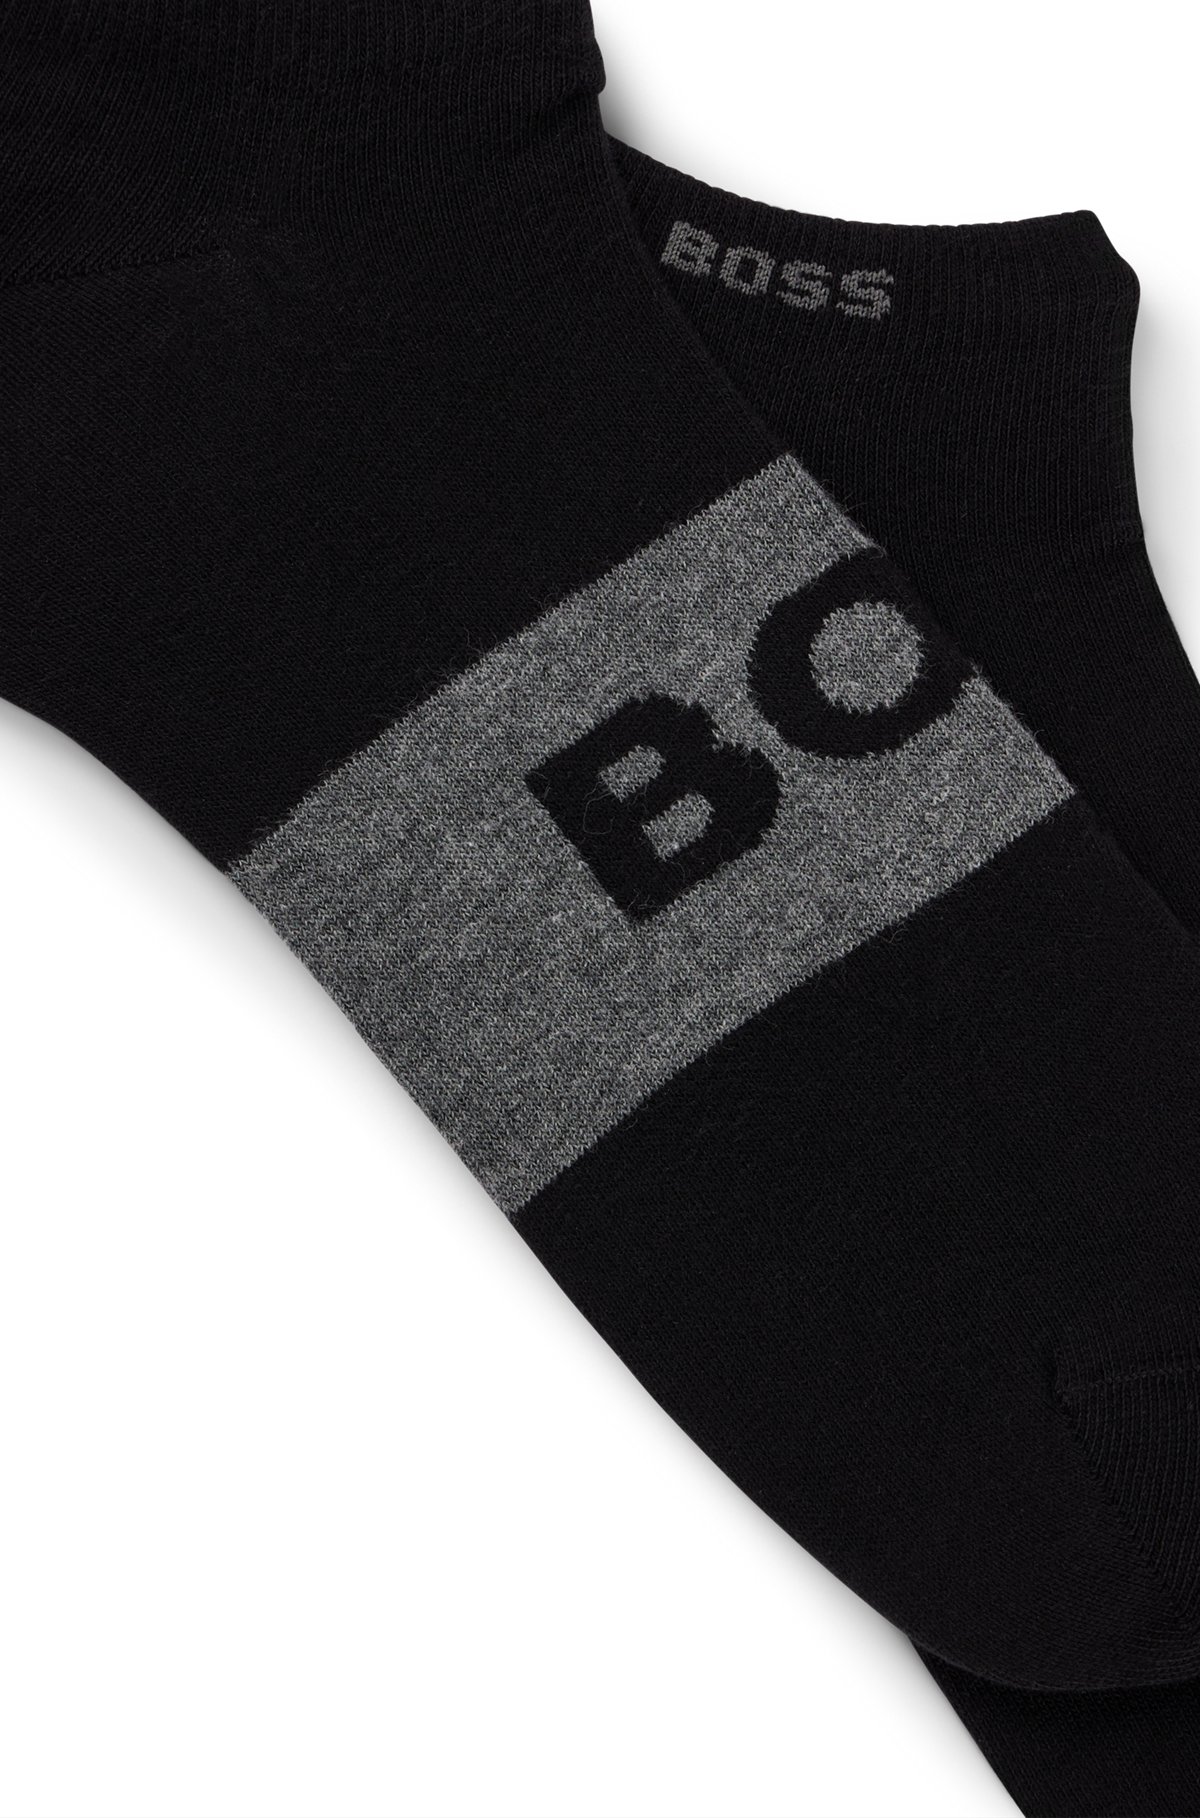 Paquete de dos pares de calcetines tobilleros de tejido elástico, Negro